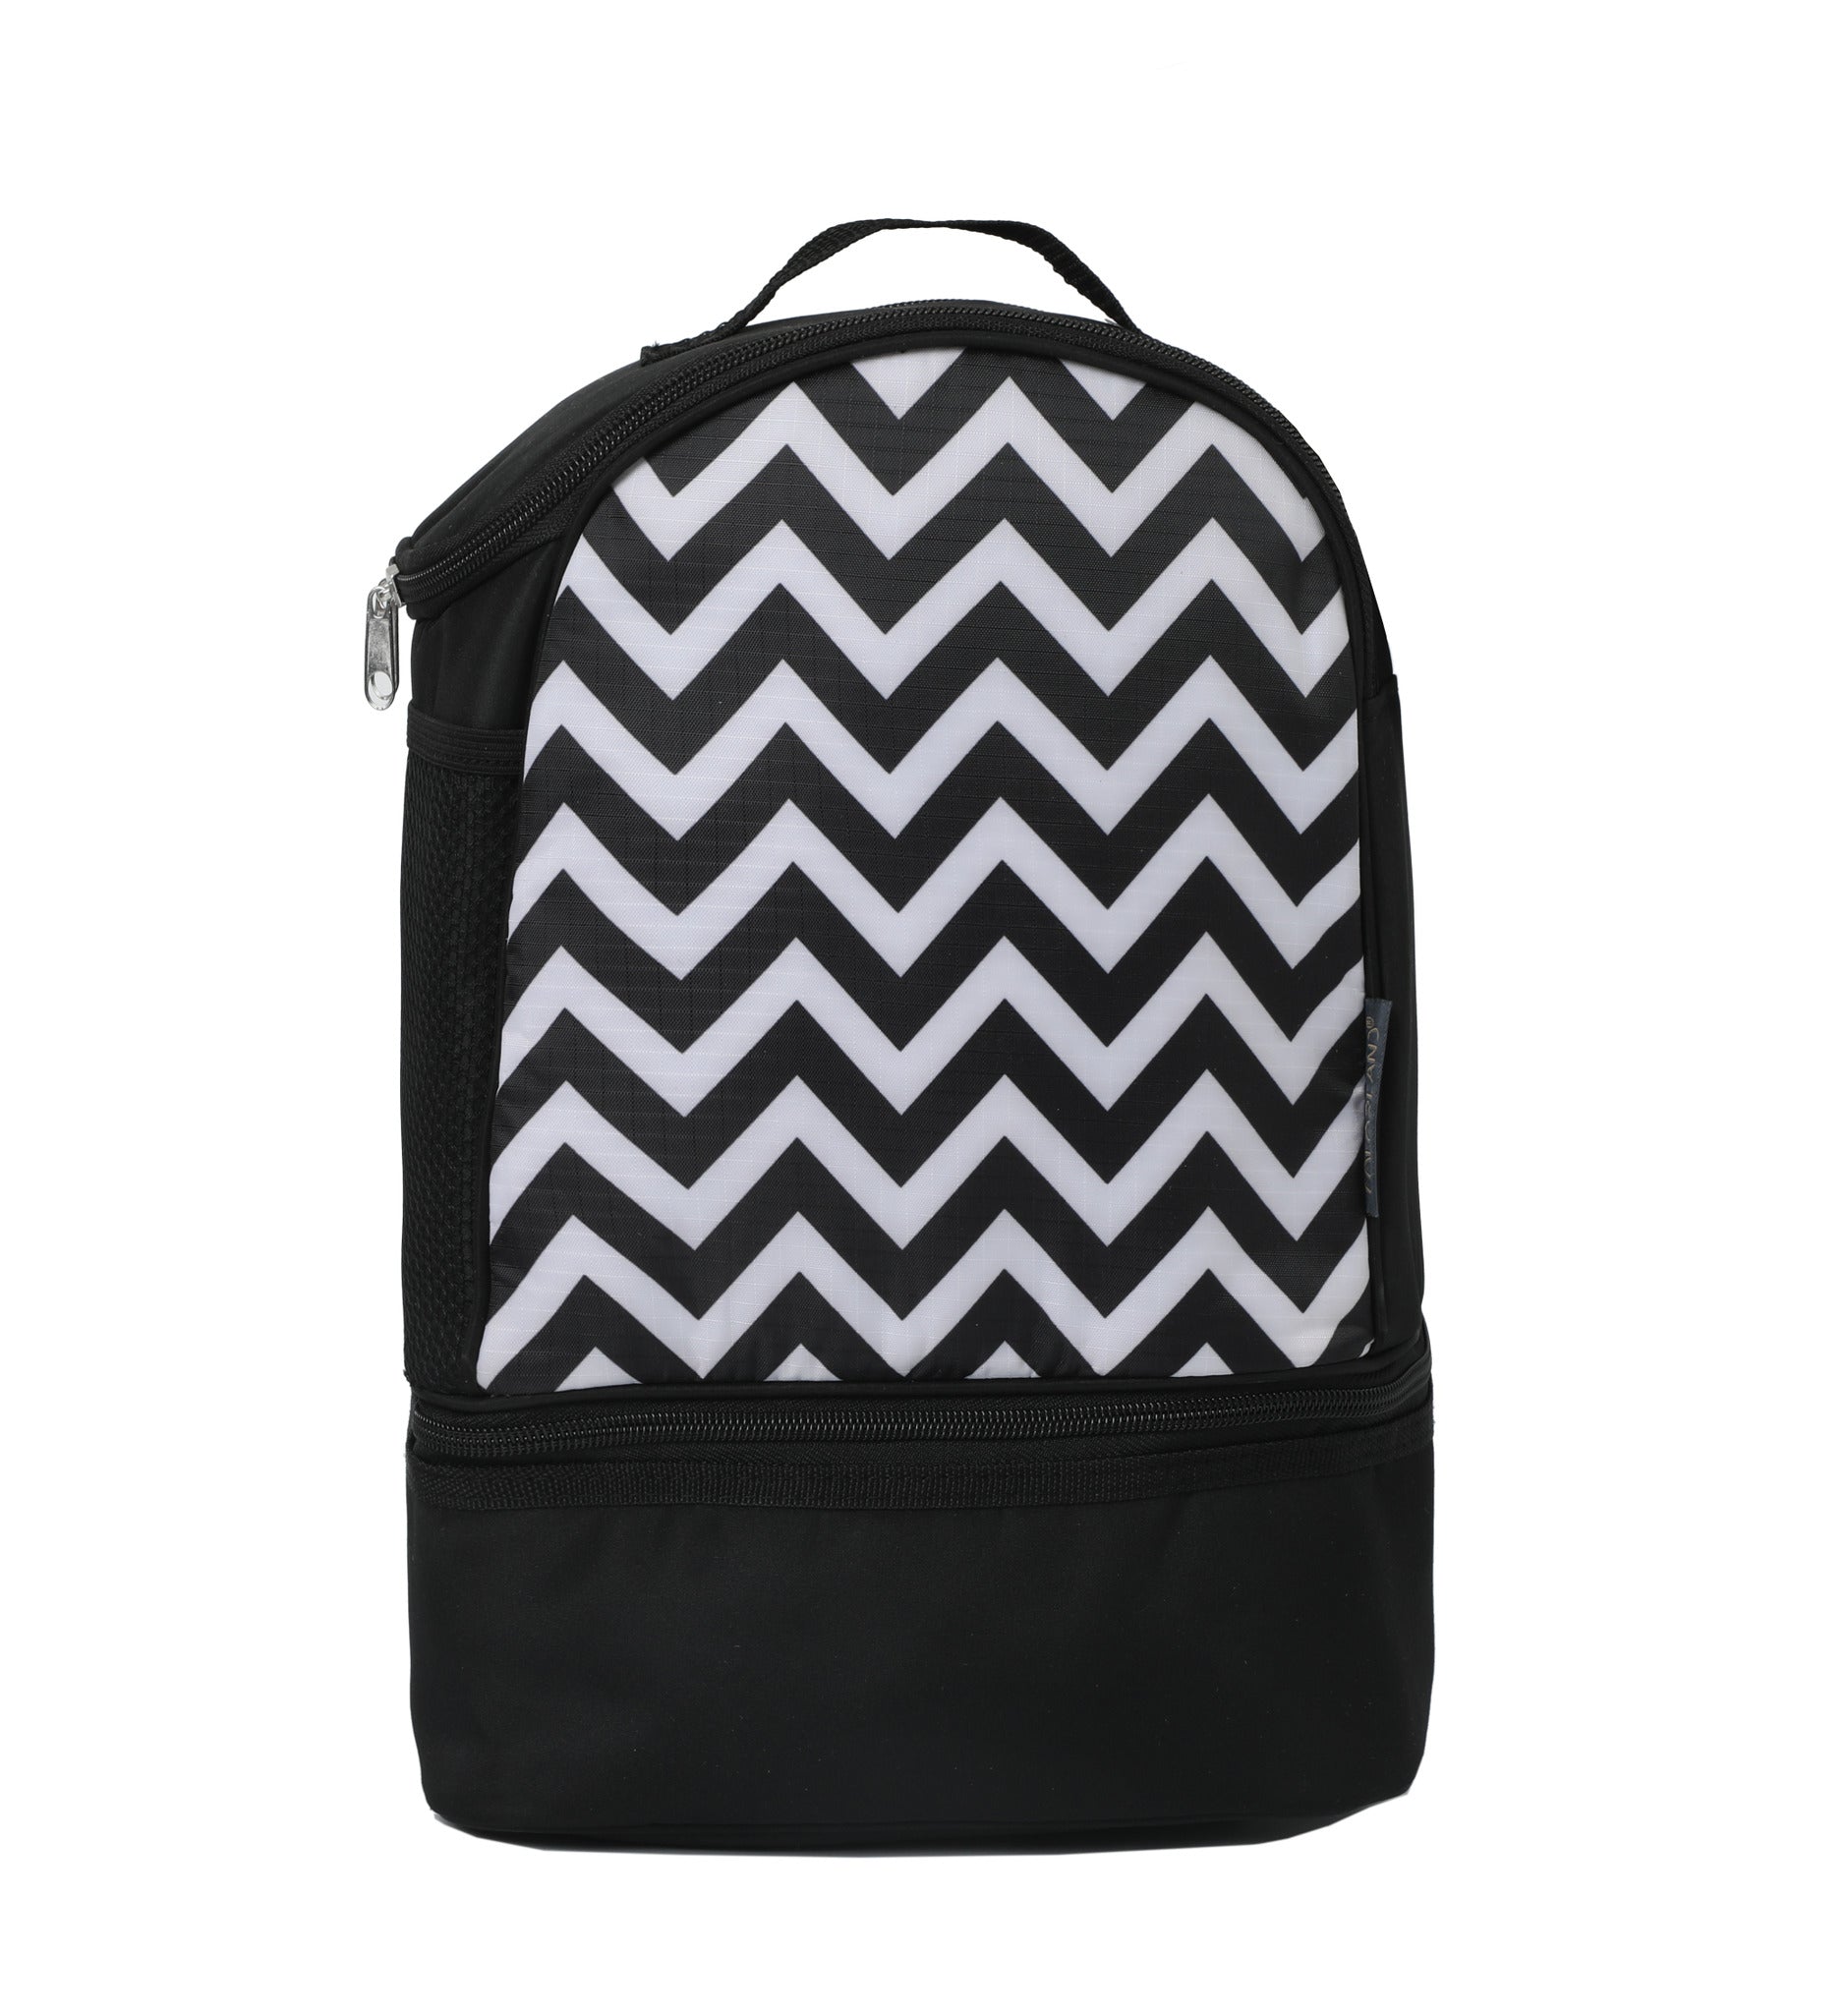 Black Backpack Cooler Bag